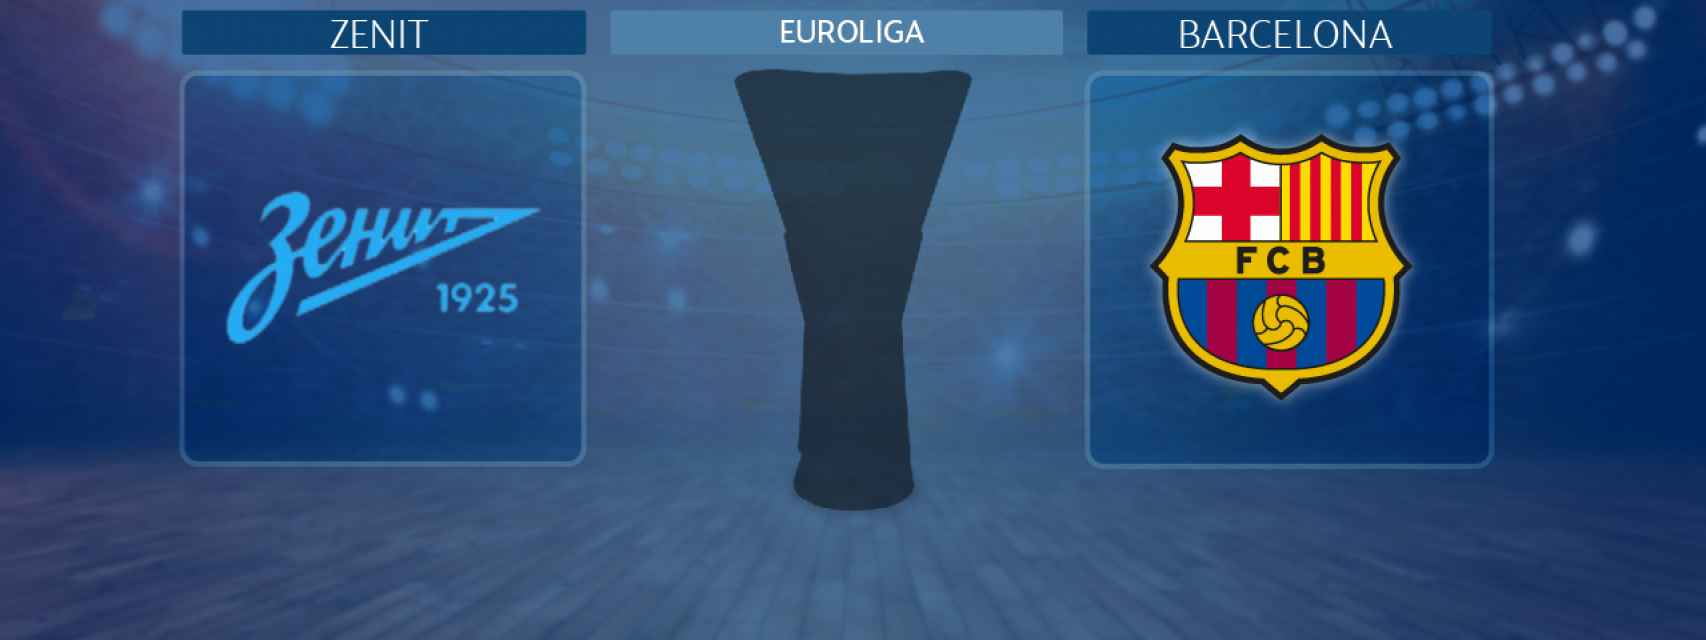 Zenit - Barcelona, partido de la Euroliga